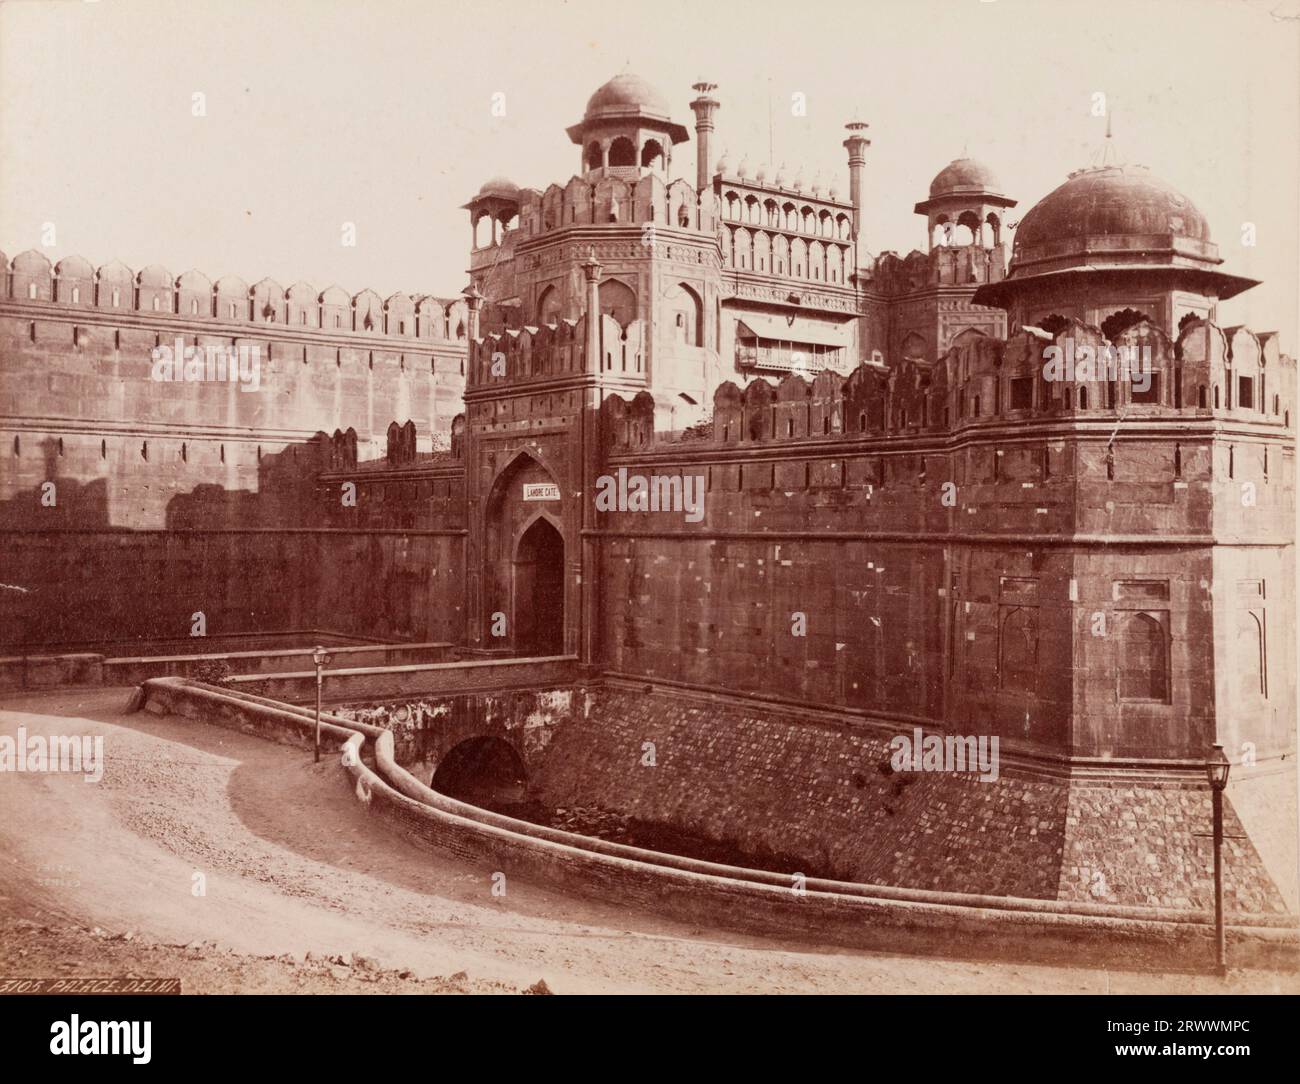 Zugang zum Lahore Gate, dem westlichen Eingang zum Delhi Fort. Die Steinburg hat eine Attika und gewölbte Türme. Negativ beschriftet: Palast 3105; Delhi. Die Bildunterschrift lautet: Lahore Gate, Eingang zum Palast, Delhi. Stockfoto